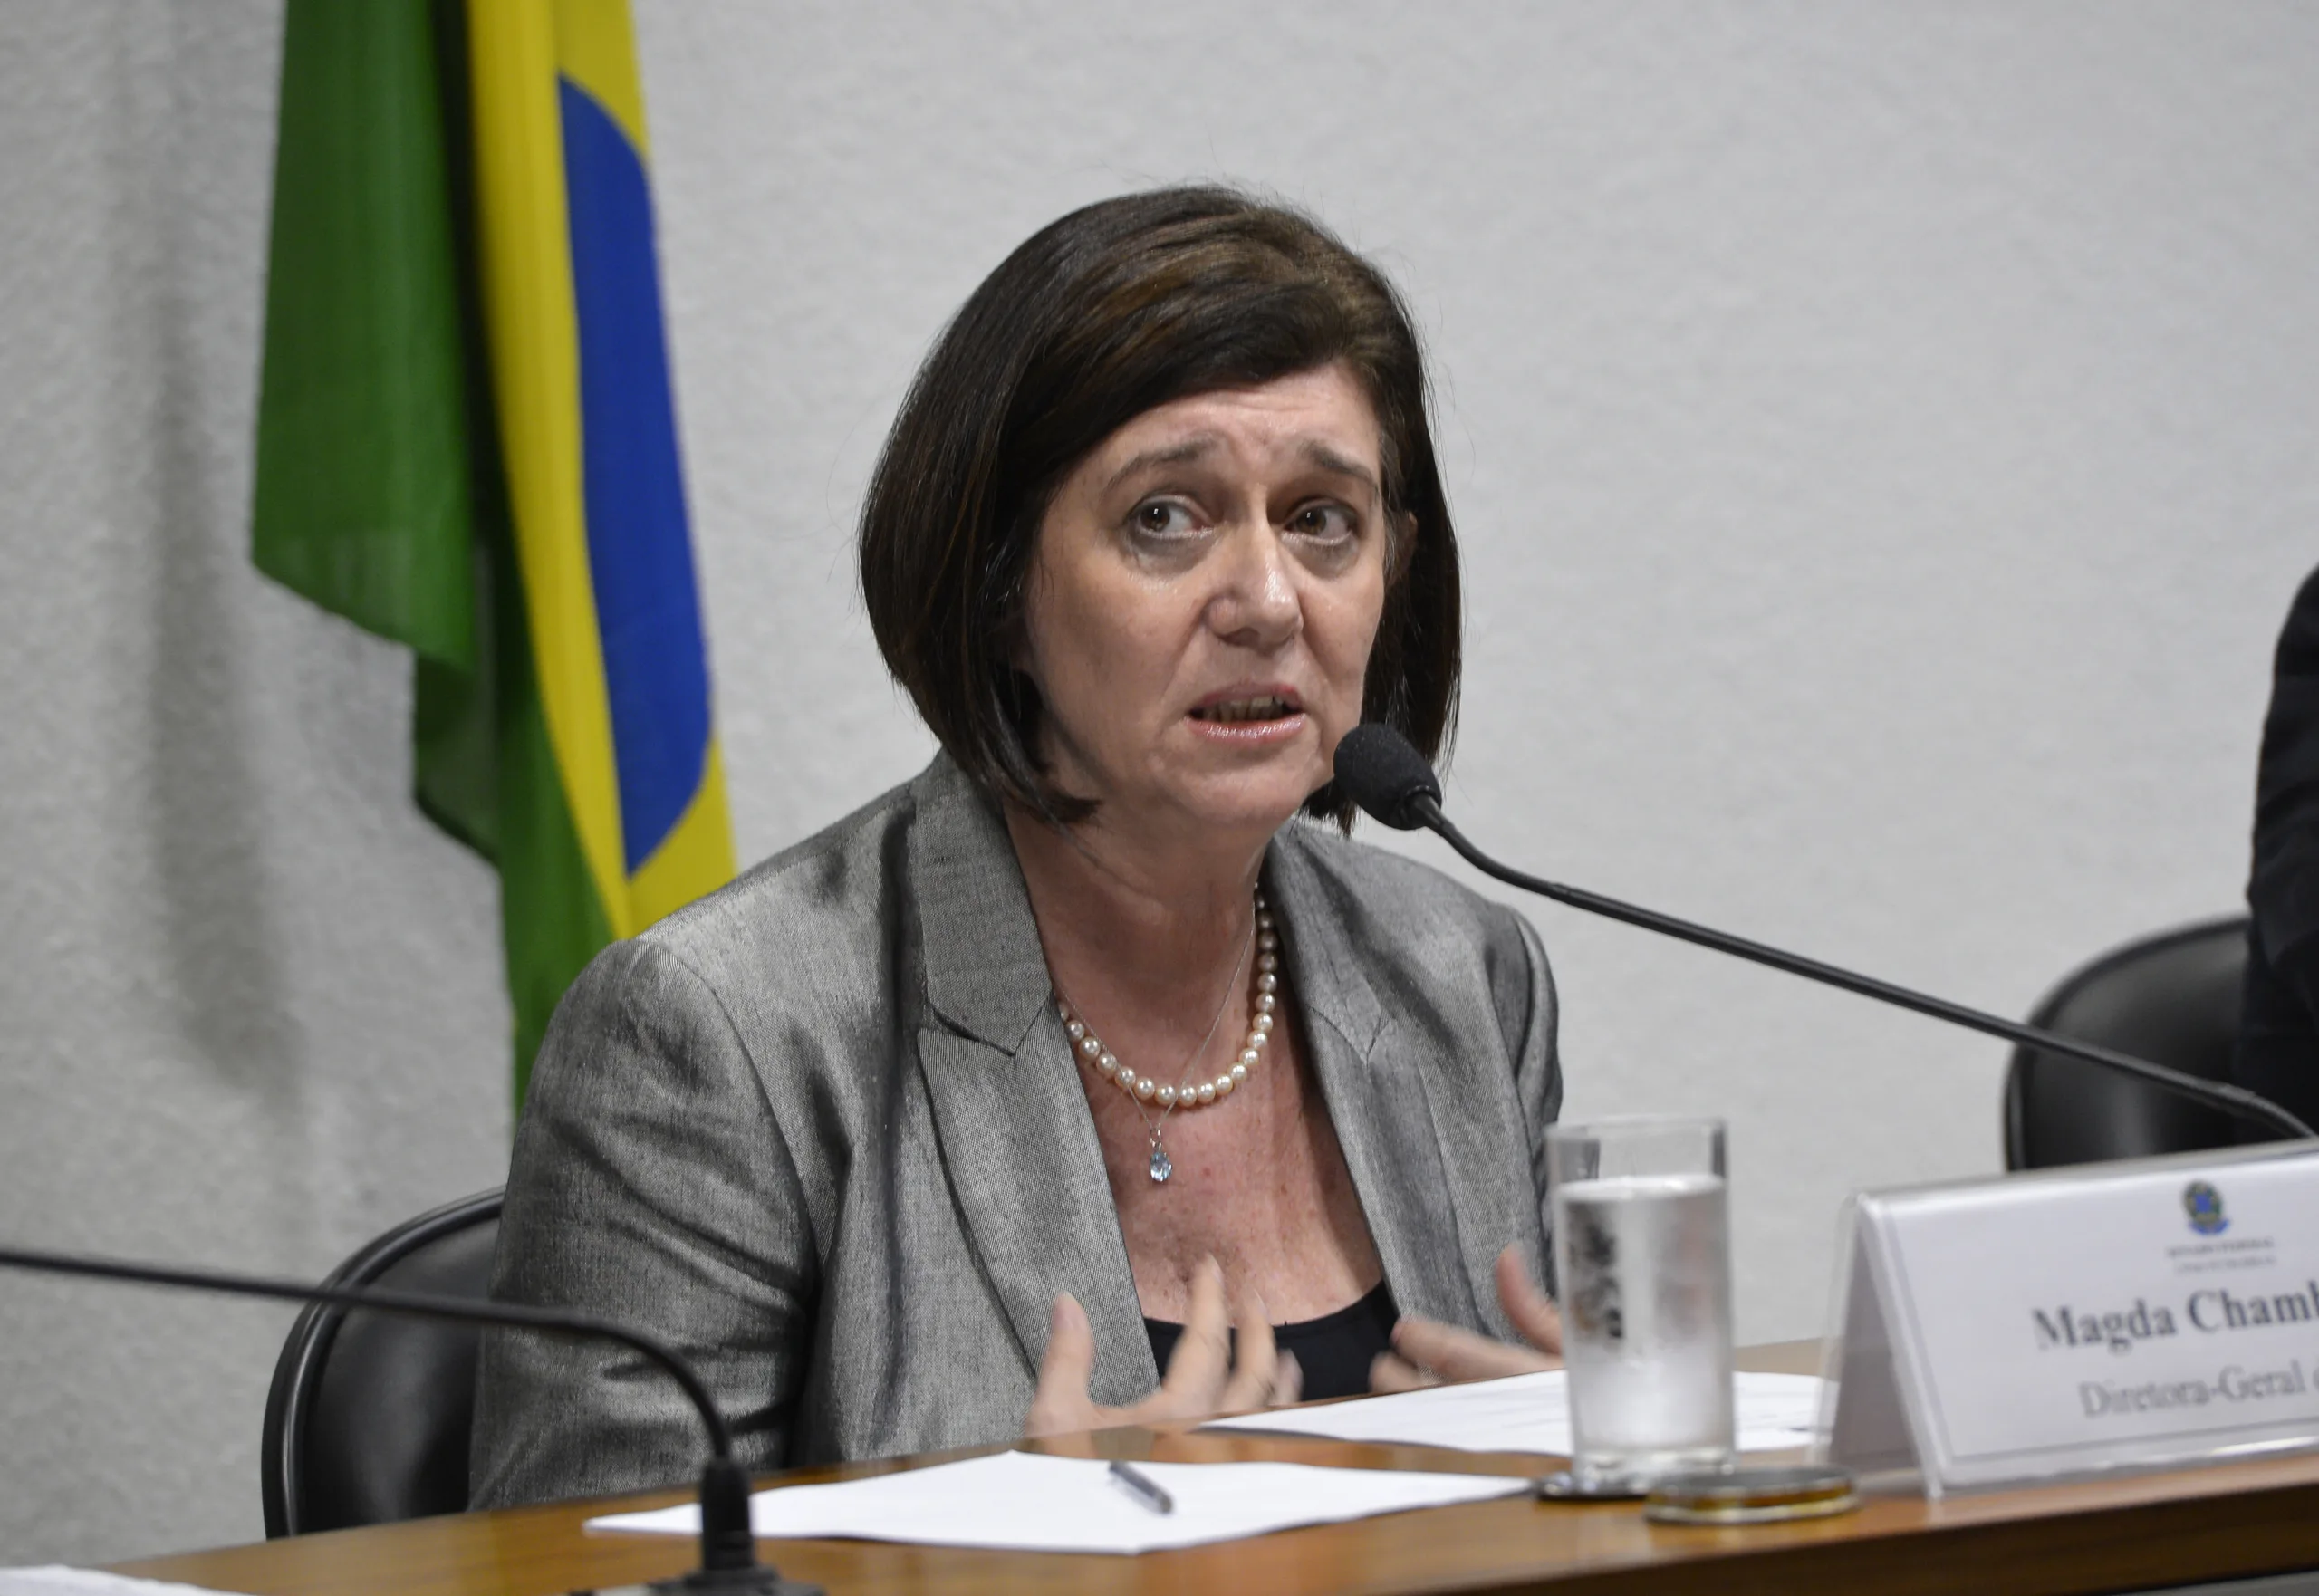 Mercado hoje: Magda Chambriard se aproxima da presidência da Petrobras (PETR3; PETR4), sólido balanço da Nvidia (NVDC34) impulsiona os mercados e dirigentes do Fed e do BC discursam. Confira a agenda completa